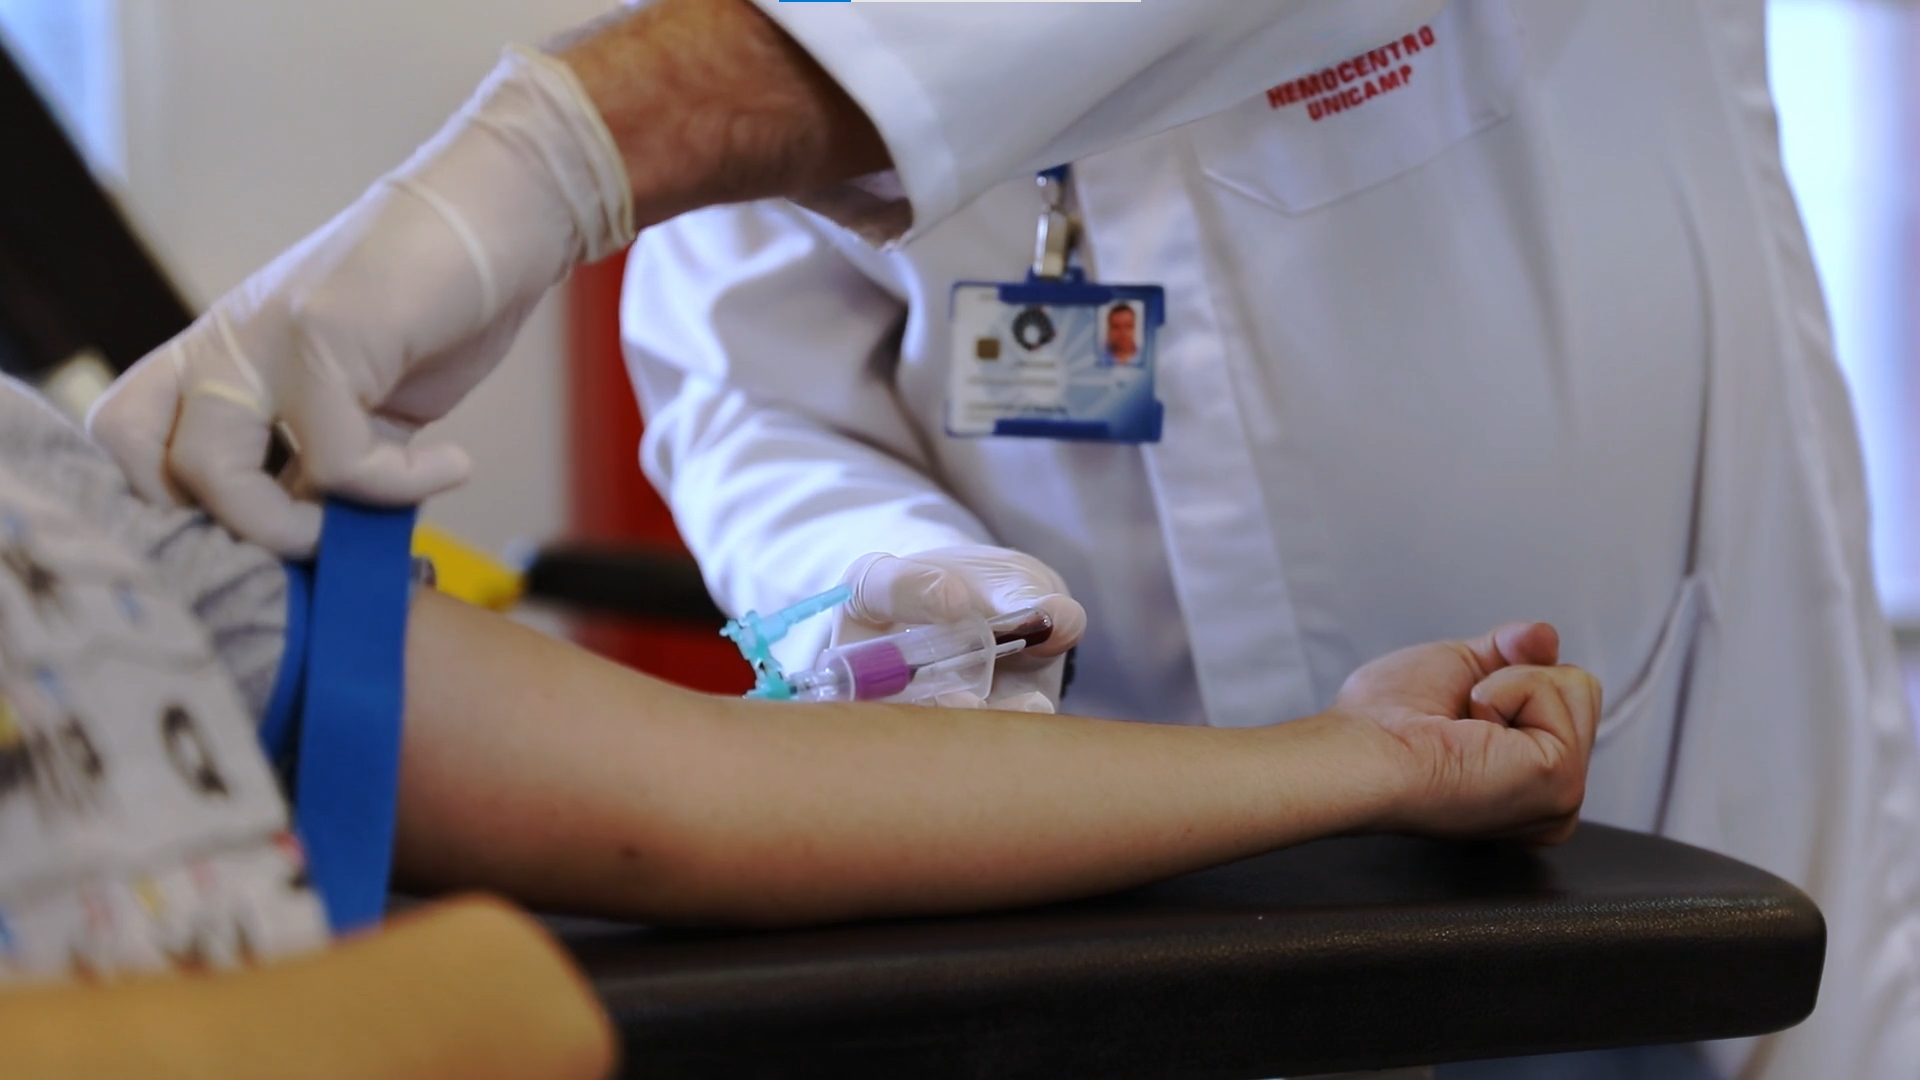 Hemocentro da Unicamp e Instituto Böllhoff incentivam doação de medula óssea no combate ao câncer infantojuvenil